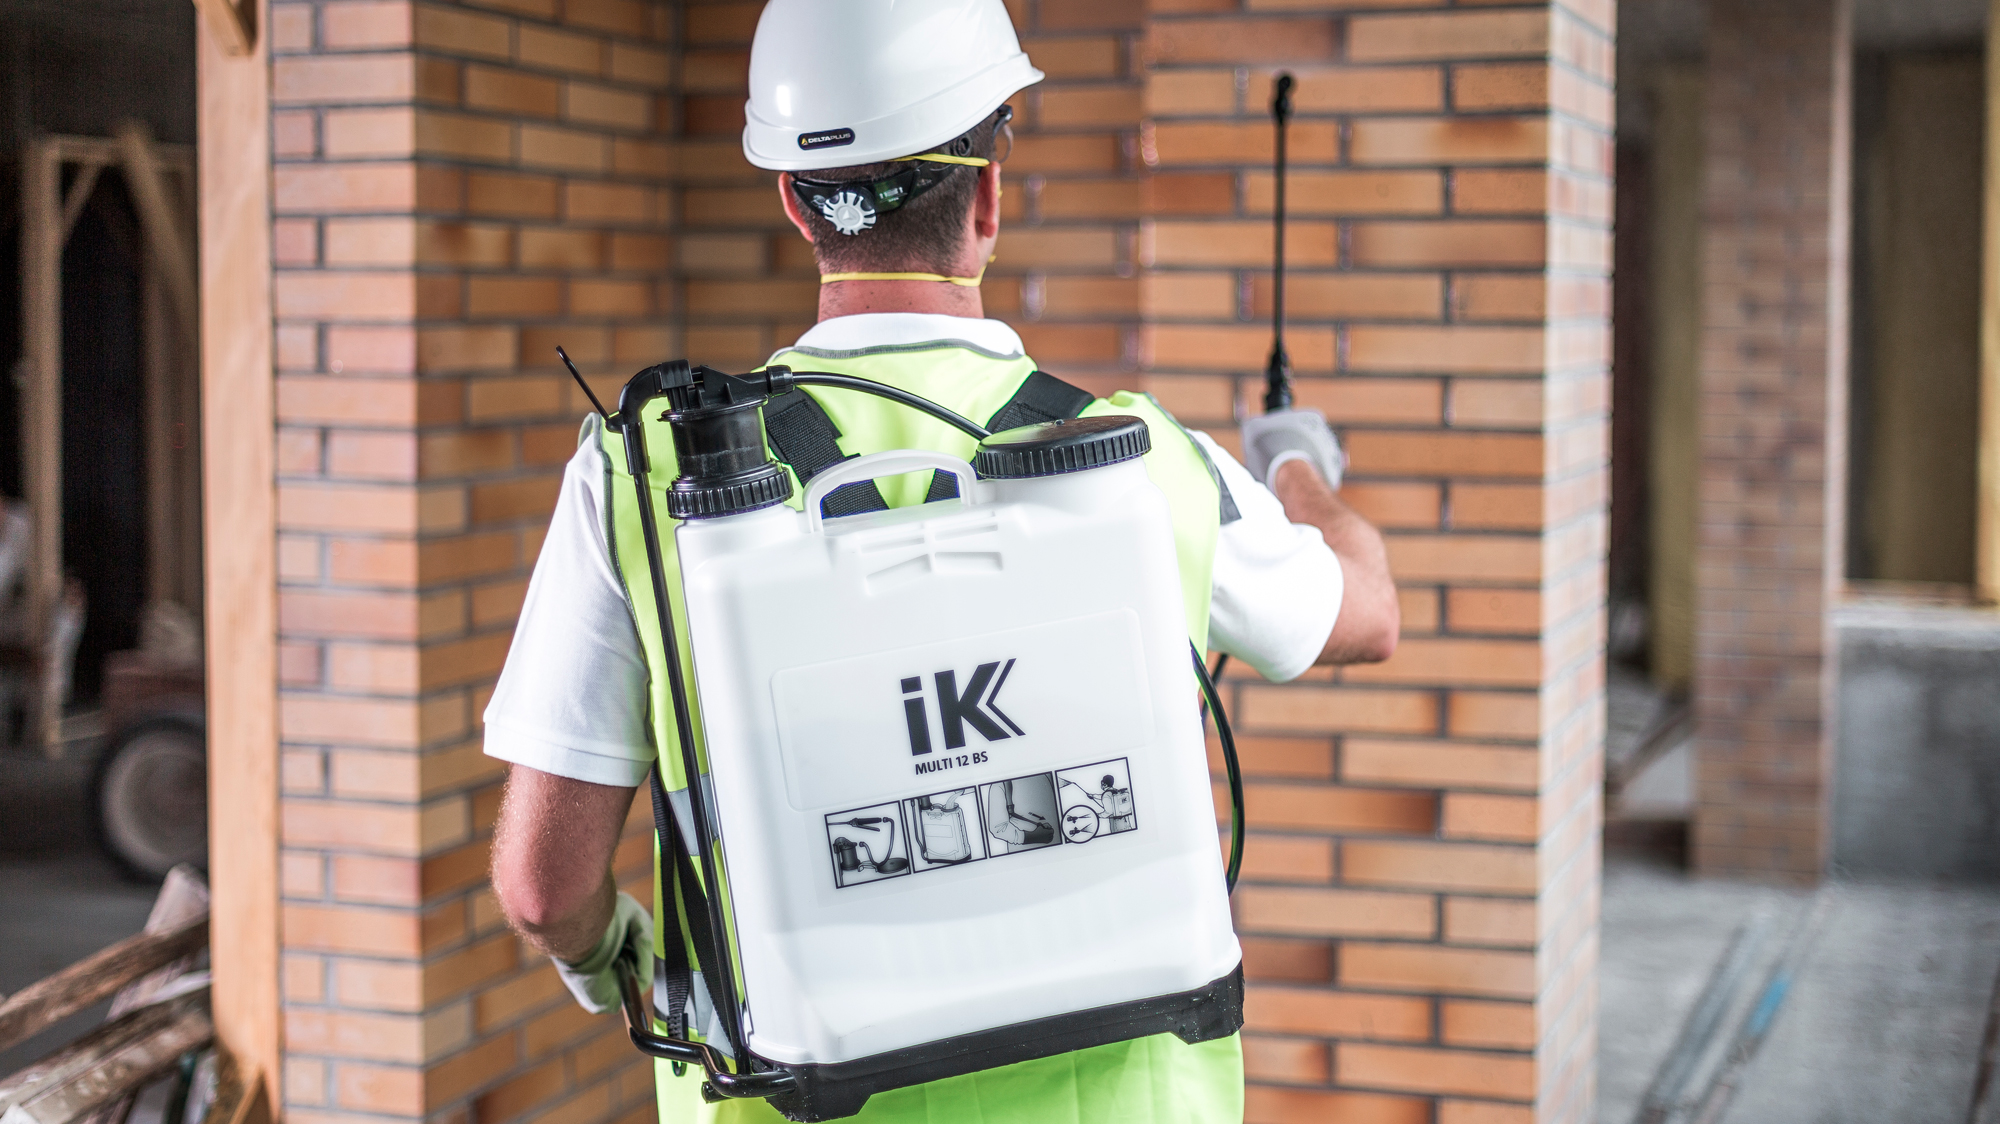 iK iK 蓄圧式噴霧器 INOX SST6 83273 緑化用品 通販